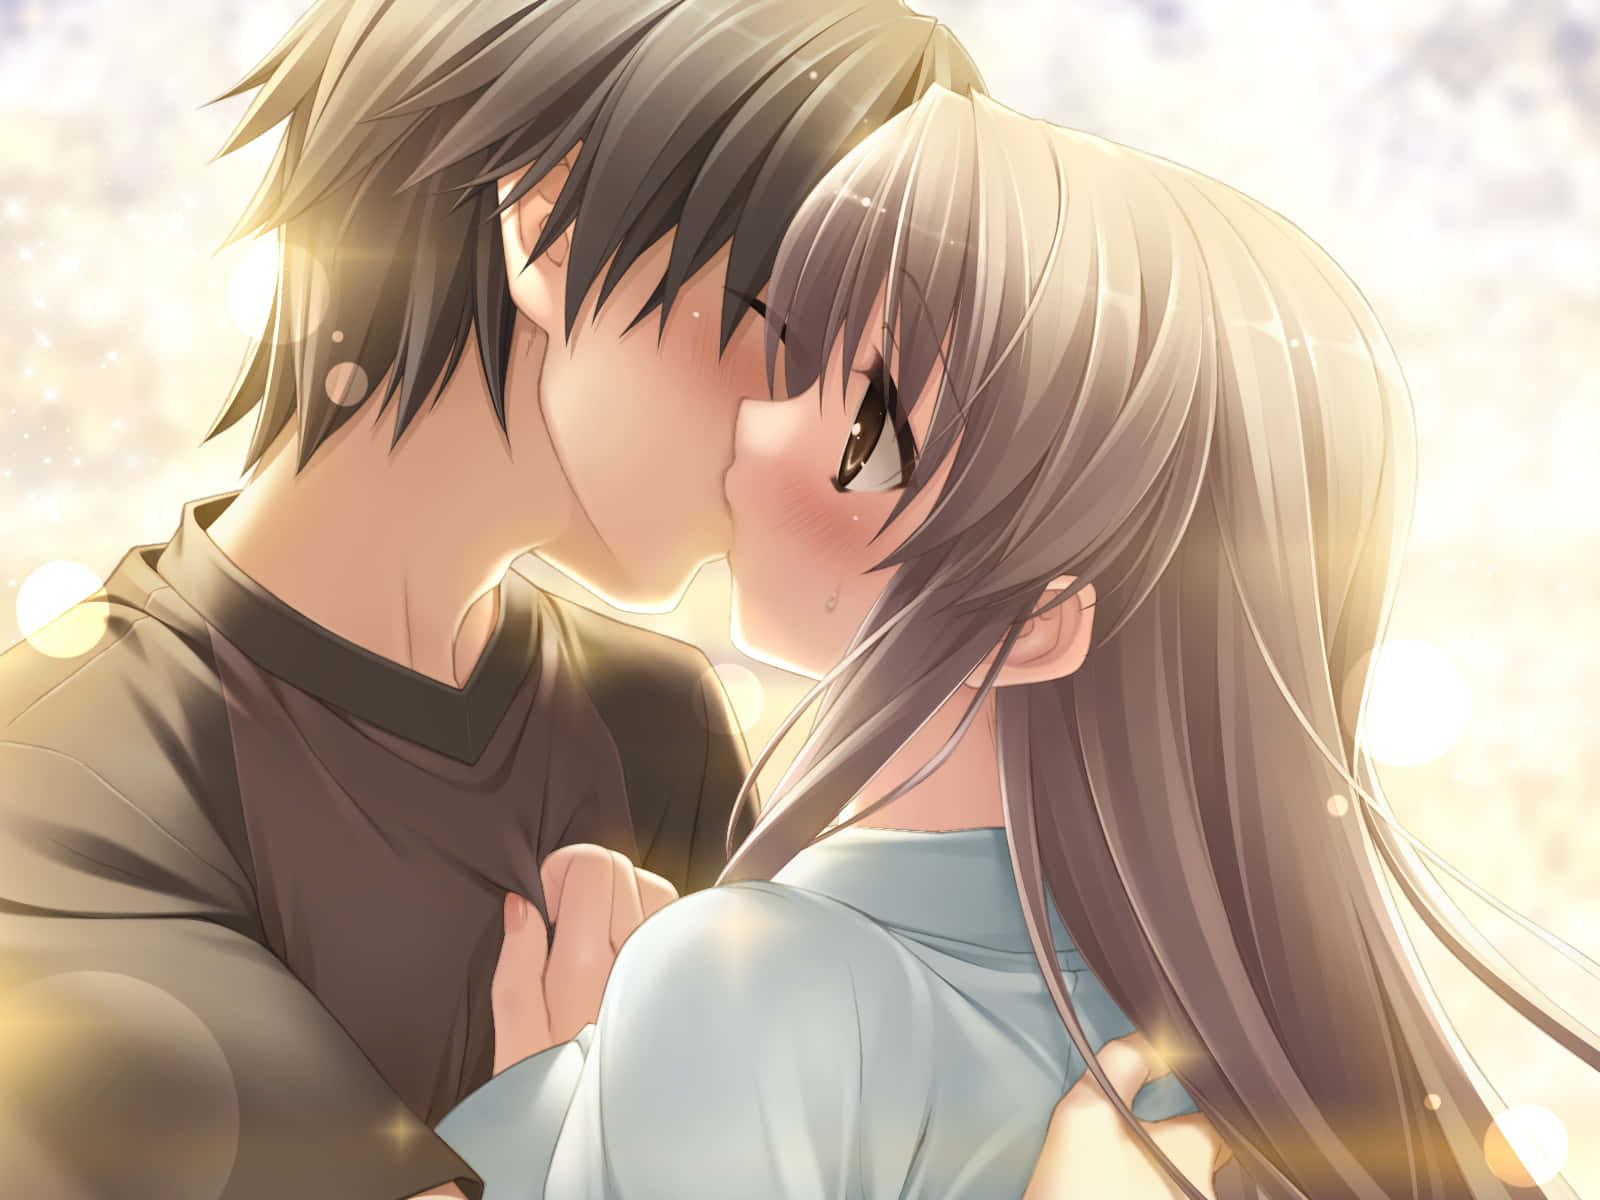 Amoren Las Relaciones De Anime, Beso. Fondo de pantalla